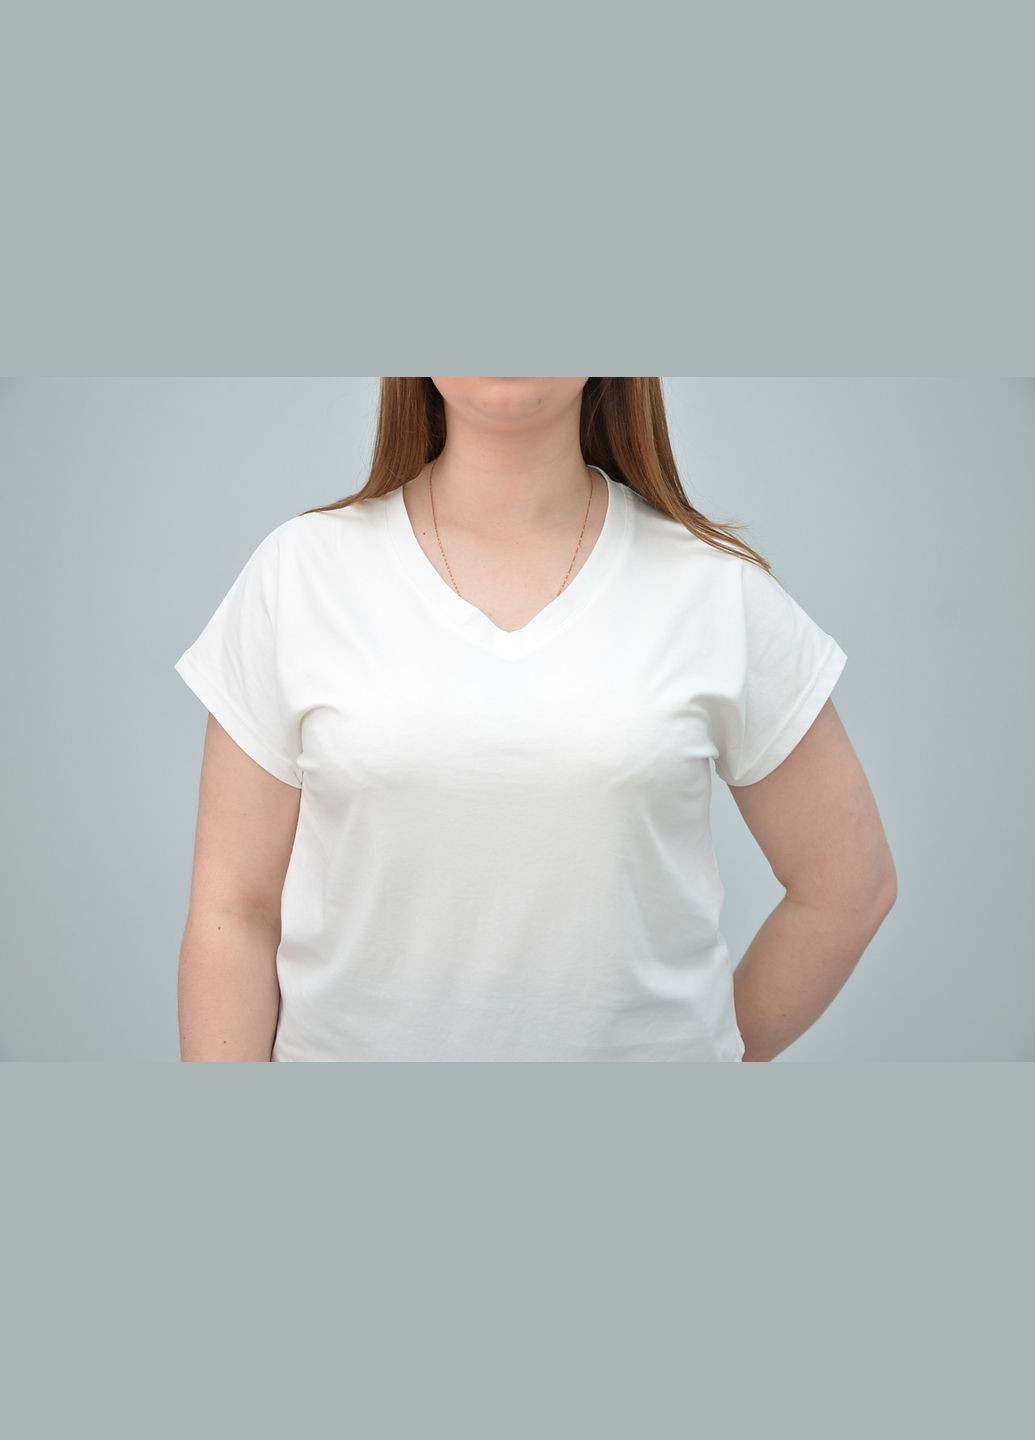 Светло-серая всесезон женская повседневная футболка, разные цвета (2xl,, 4xl, 5xl) светло-серый, 3xl No Brand